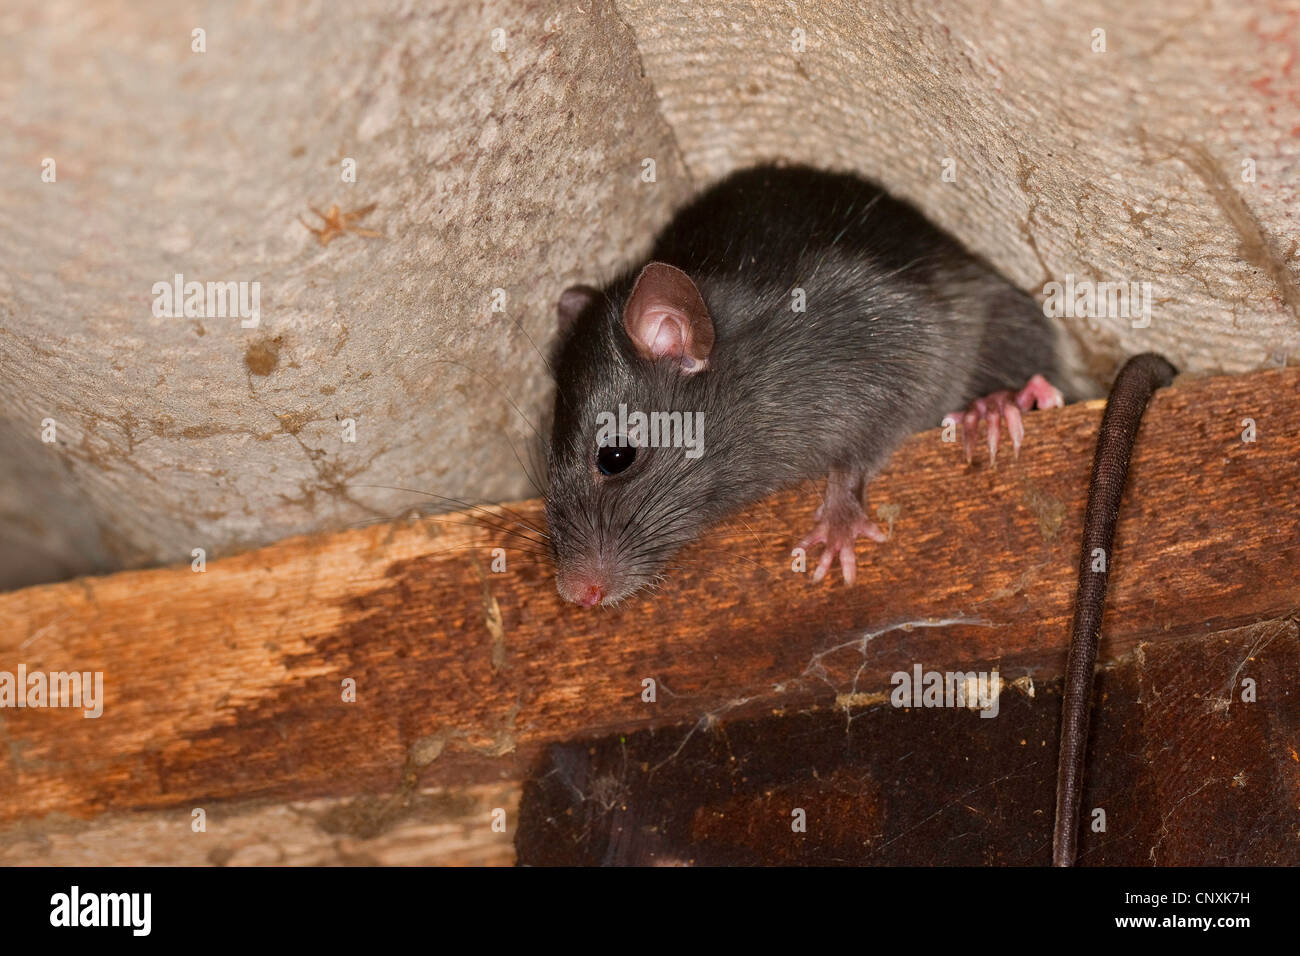 Rat noir, rat noir, rat maison, bateau, rats (Rattus rattus), escalade dans une étable, Allemagne Banque D'Images